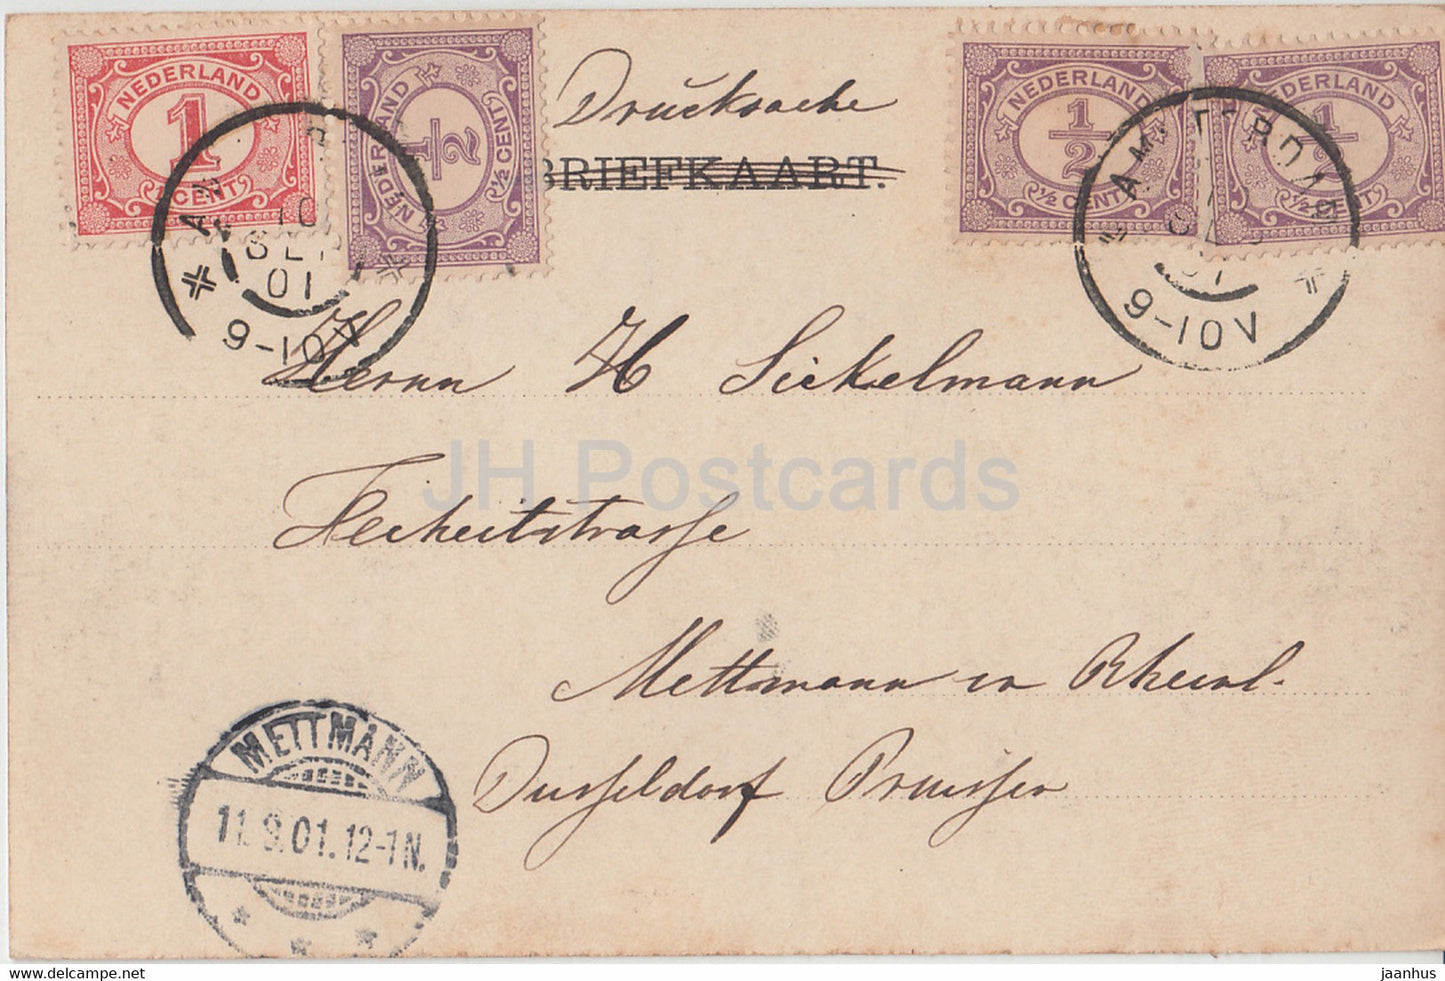 Amsterdam - Het Y met de West Indische Mail - navire - carte postale ancienne - 1901 - Pays-Bas - utilisé